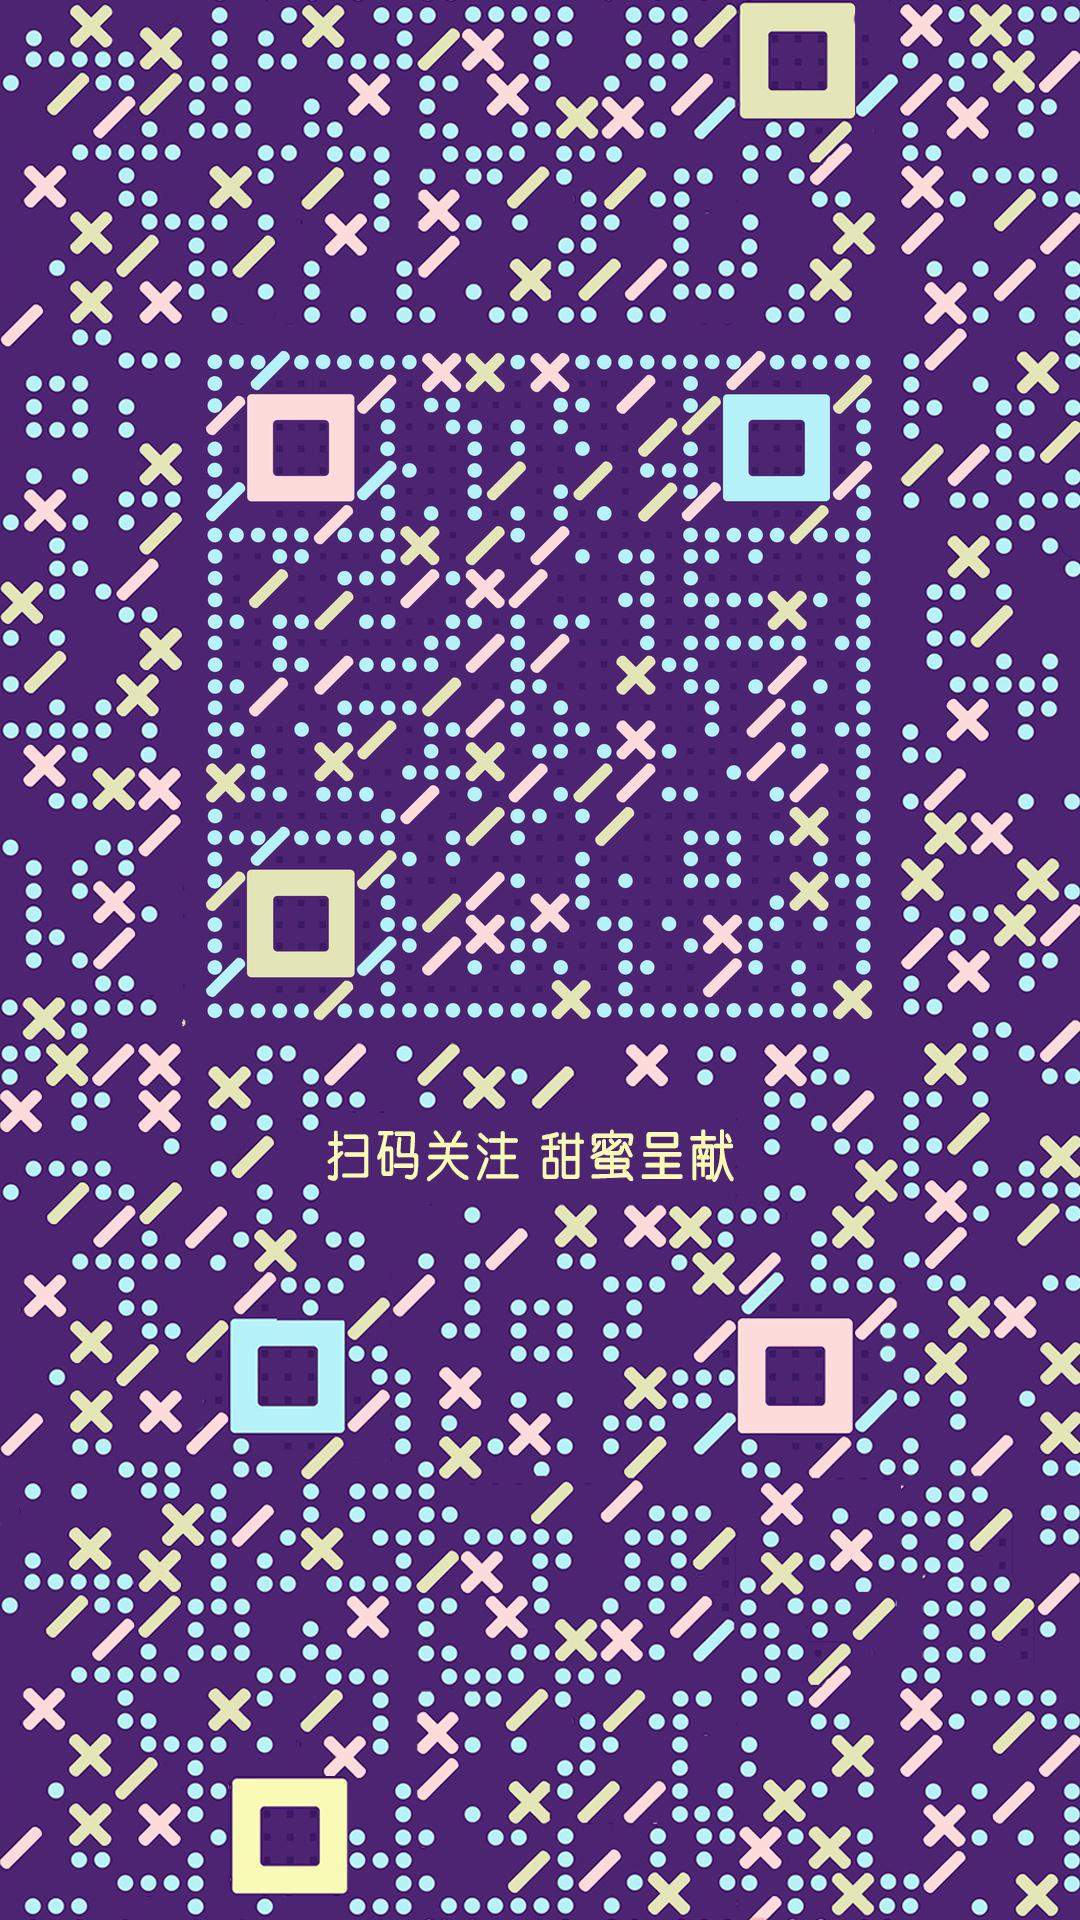 糖果格子紫色反白花纹二维码生成器-平面静态-手机海报